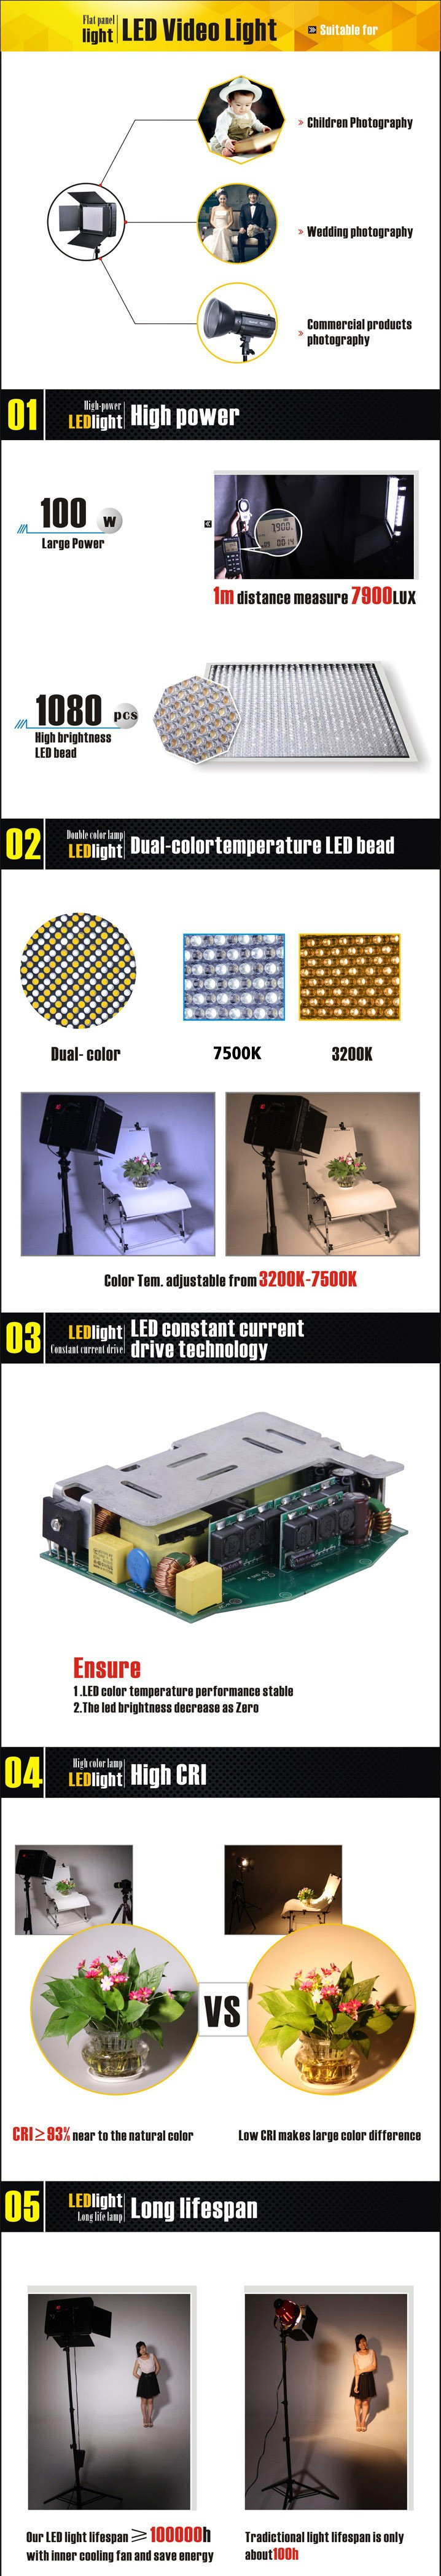 LED осветитель NiceFoto LED-2160DMX (мощность 200Вт)